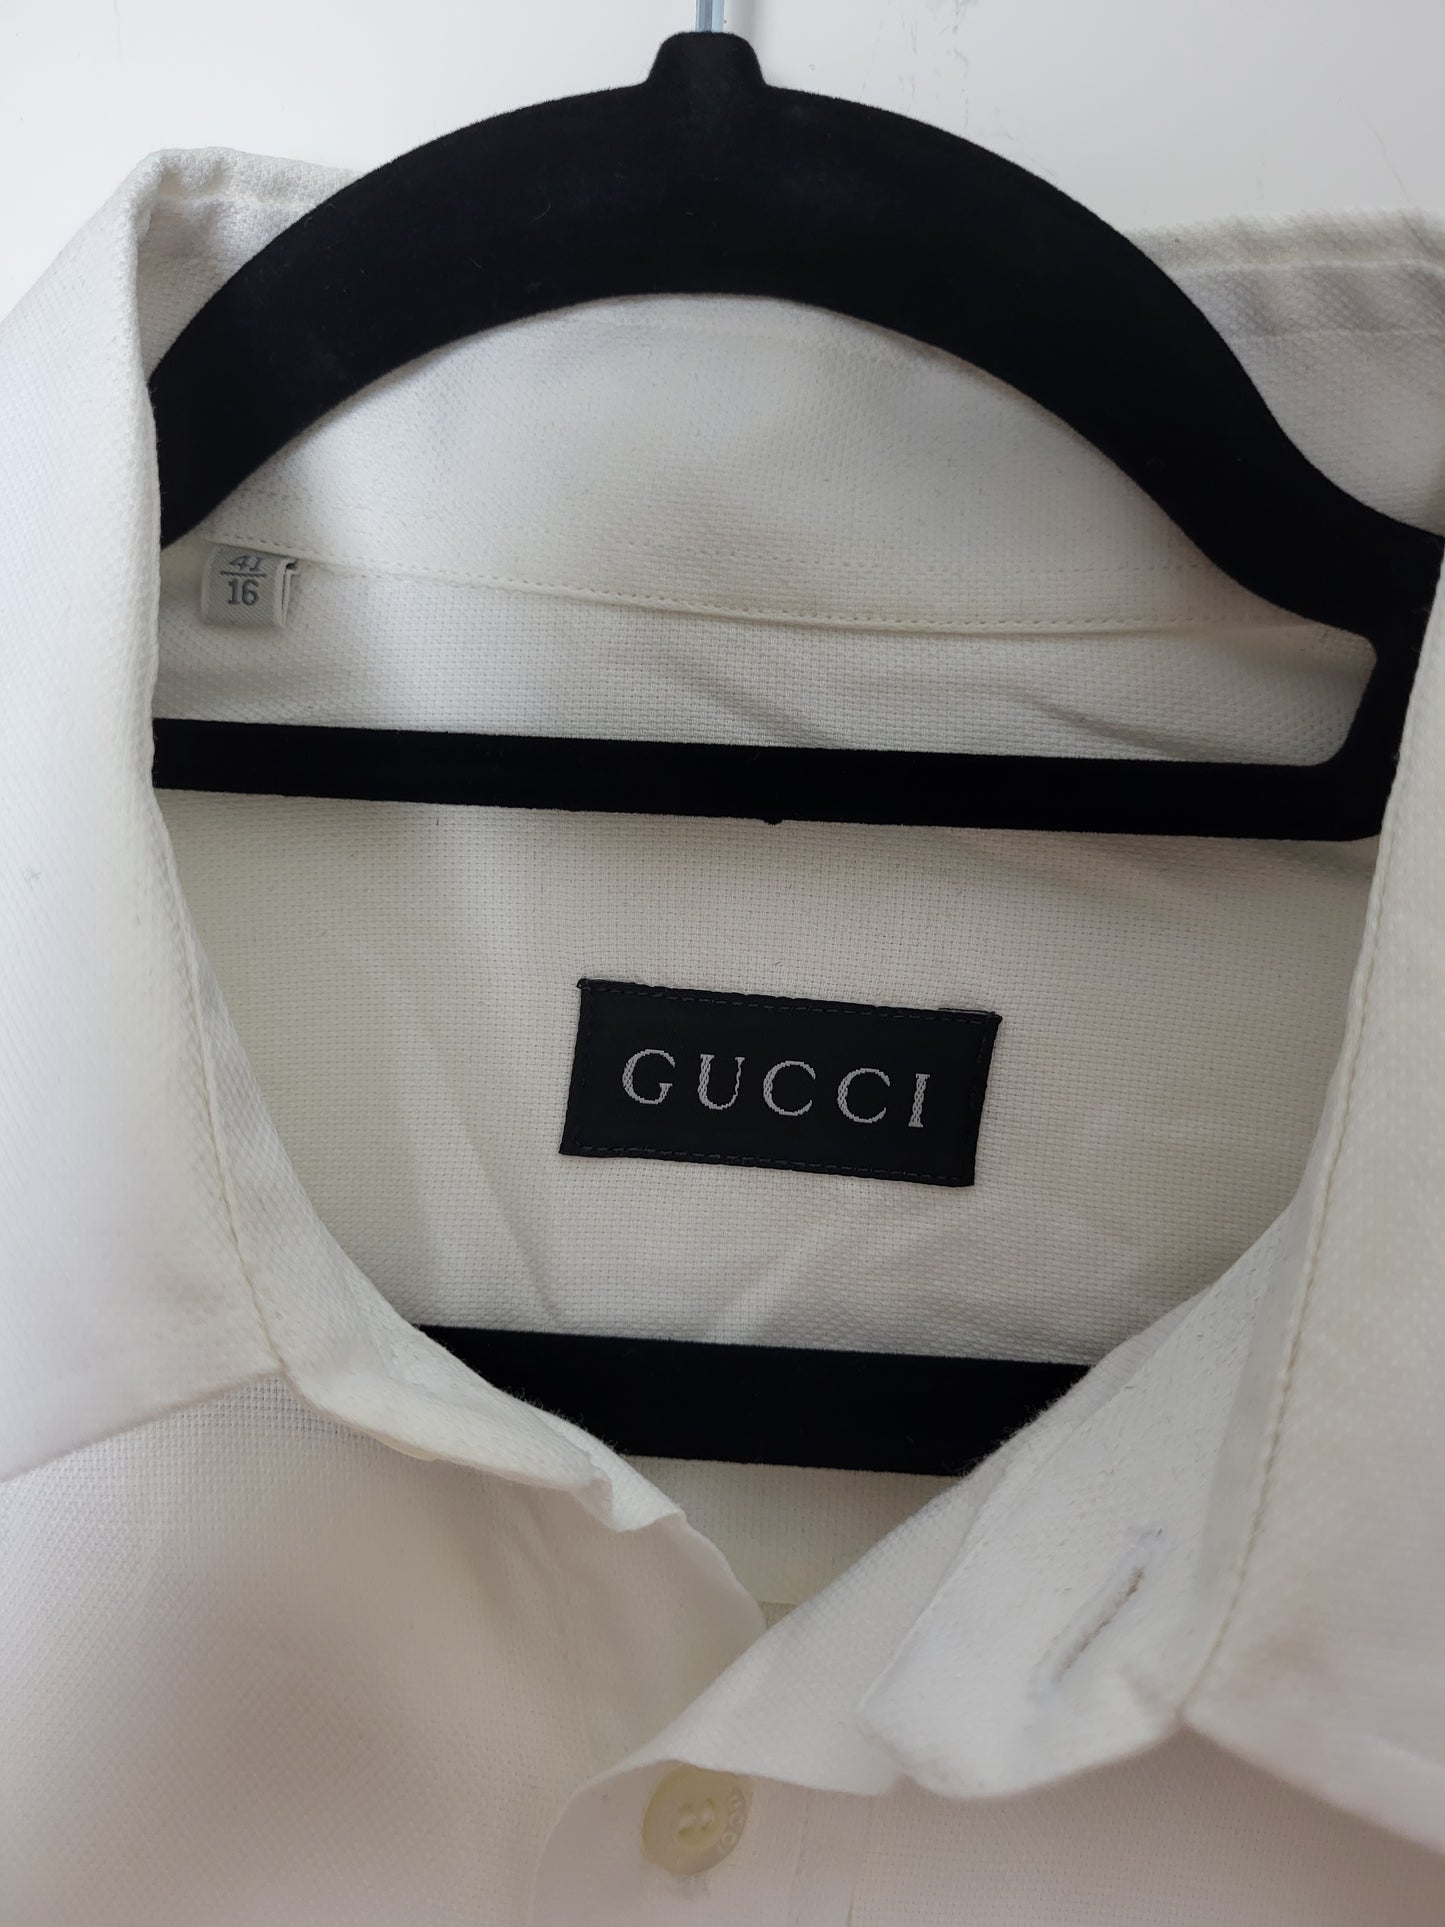 Gucci - Hemd - Klassisch - Weiß - Herren - XL